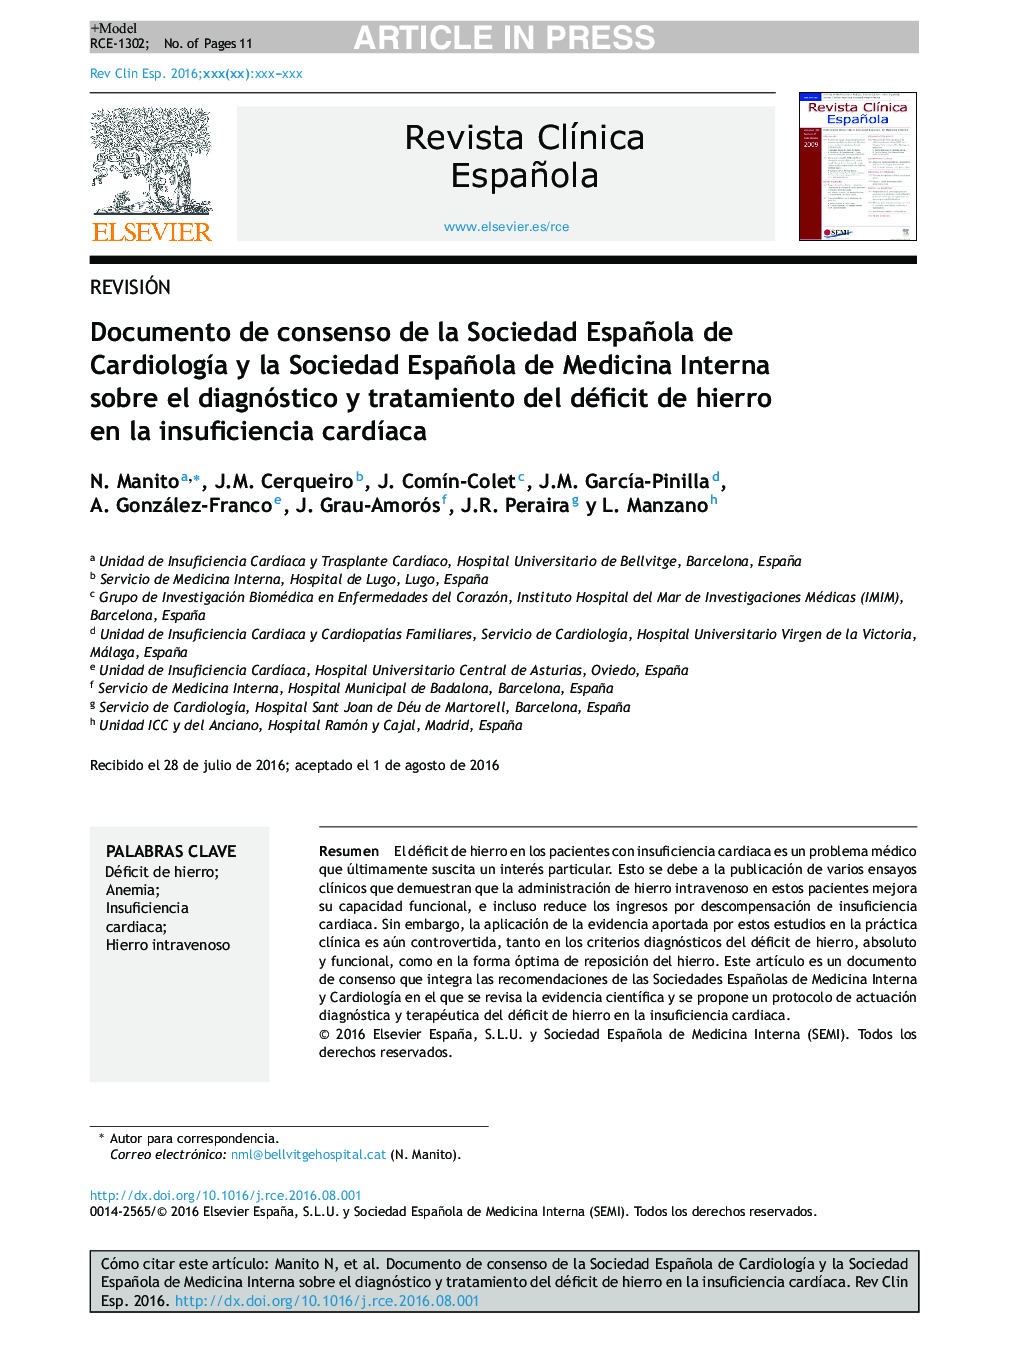 Documento de consenso de la Sociedad Española de CardiologÃ­a y la Sociedad Española de Medicina Interna sobre el diagnóstico y tratamiento del déficit de hierro en la insuficiencia cardÃ­aca